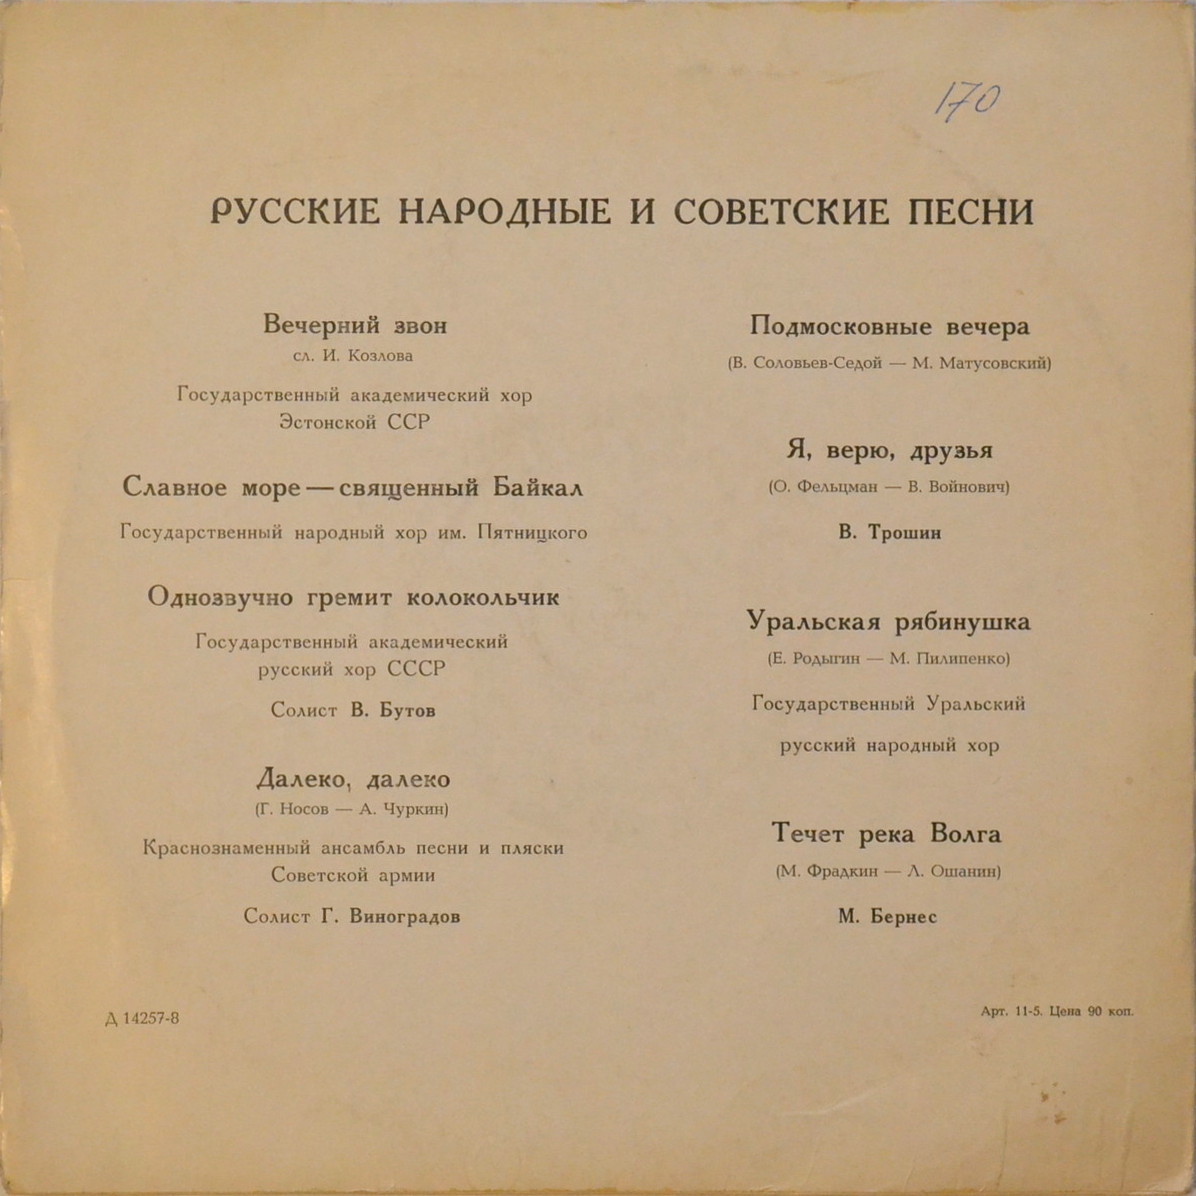 Русские народные песни. Песни советских композиторов (экспортное издание для Польши)